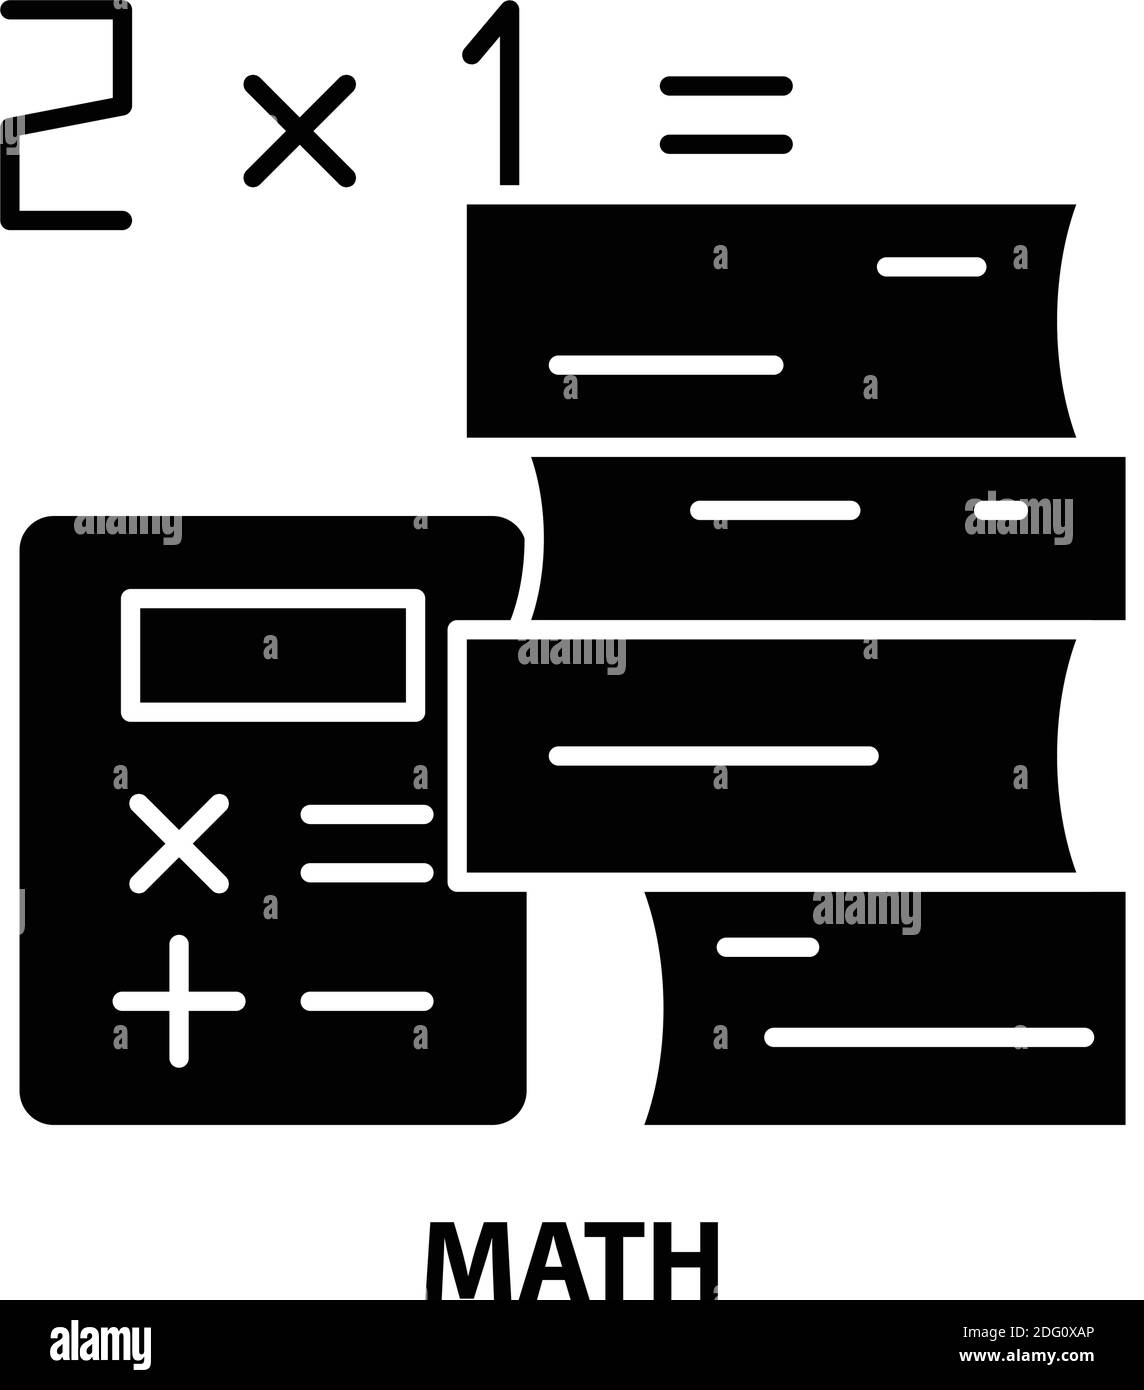 Mathematisches Symbol, schwarzes Vektorzeichen mit editierbaren Konturen, Konzeptdarstellung Stock Vektor